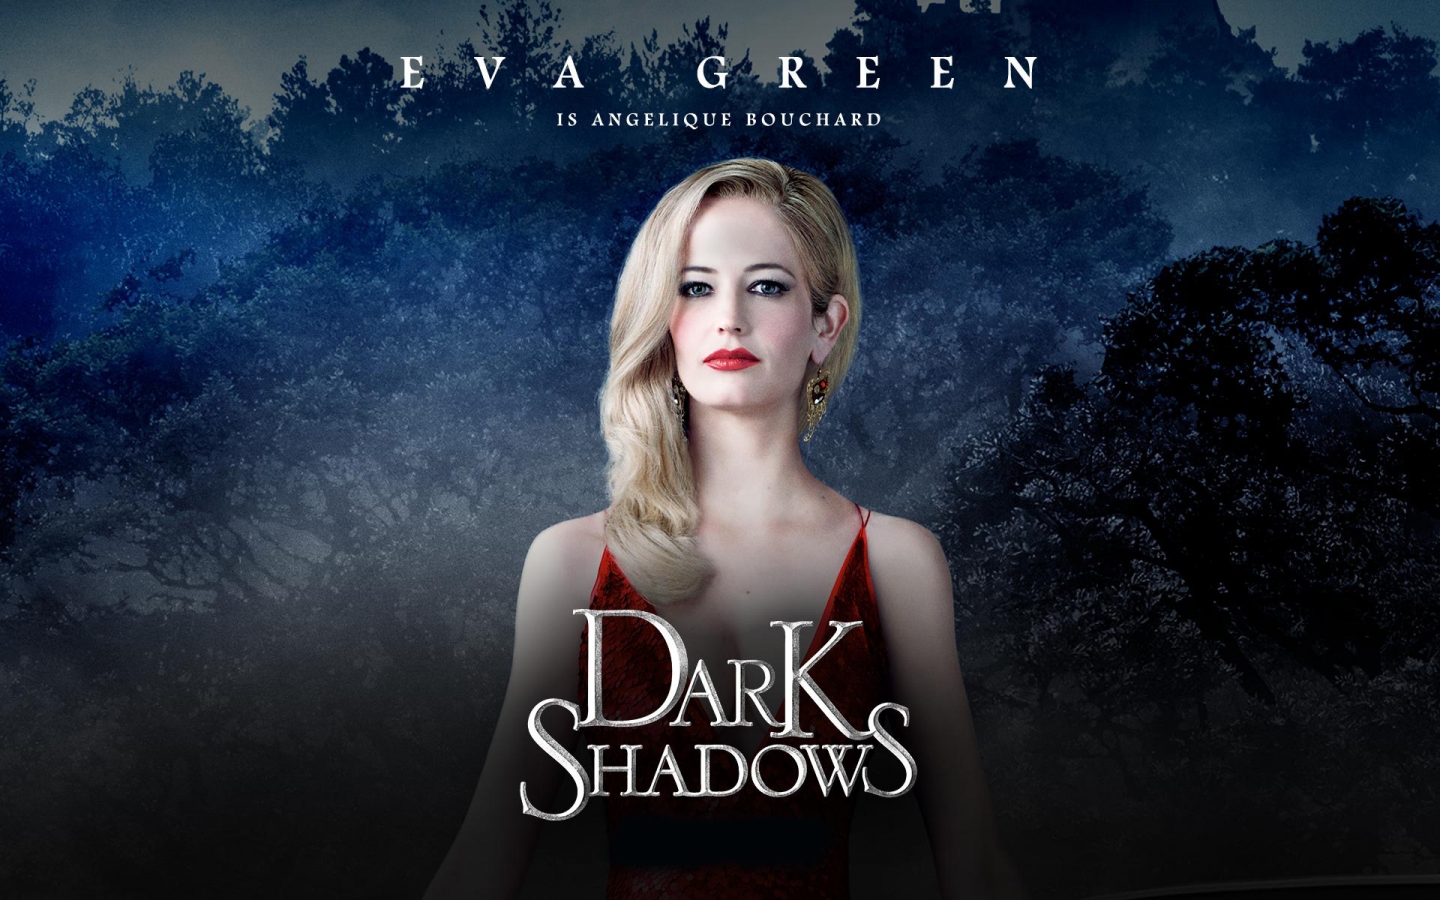 Dark Shadows Eva Green for 1440 x 900 widescreen resolution